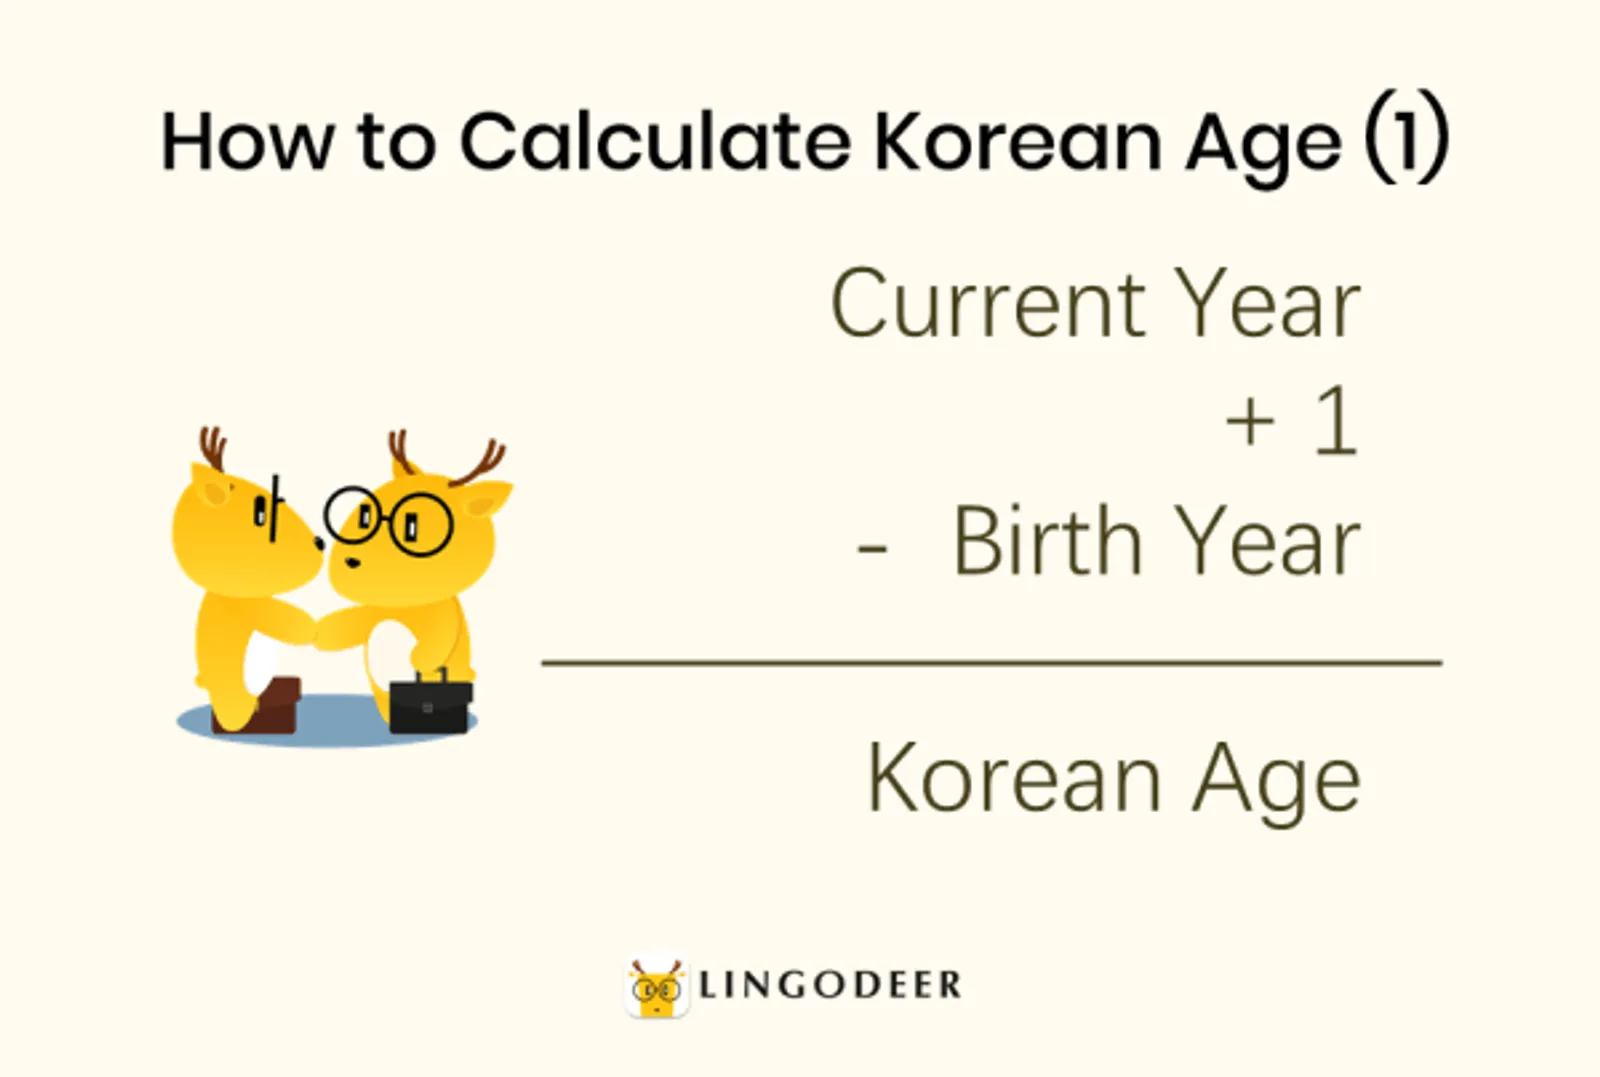 Kenapa Hitungan Usia di Korea Berbeda? 9 Fakta Menarik Mengenai Korea